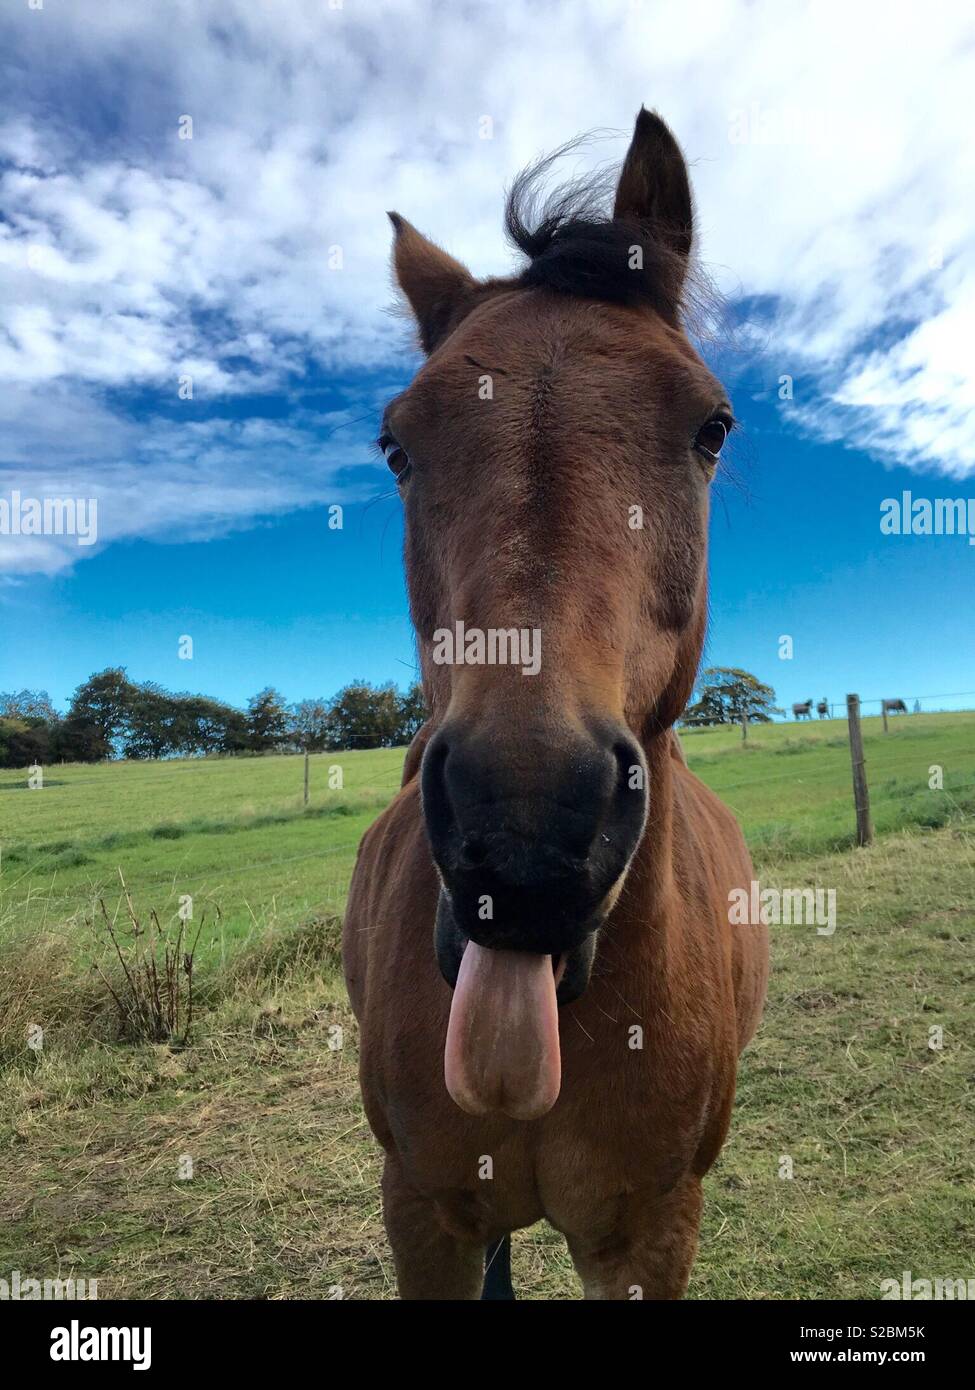 Cheeky pony! Stock Photo